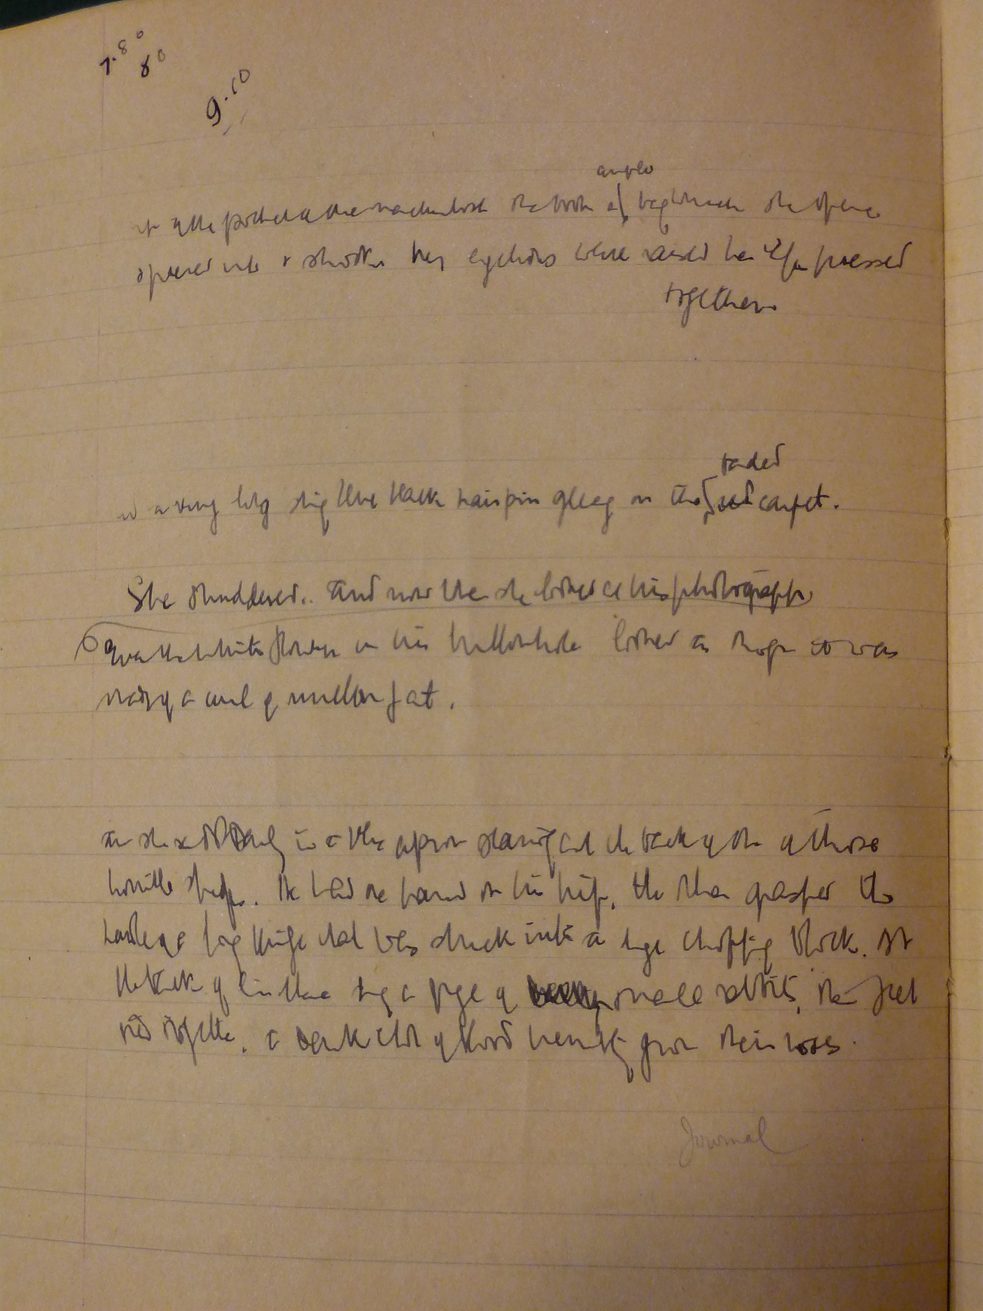 Página escrita em 1921 pela escritora neozelandesa Katherine Mansfield em seu caderno de notas. 